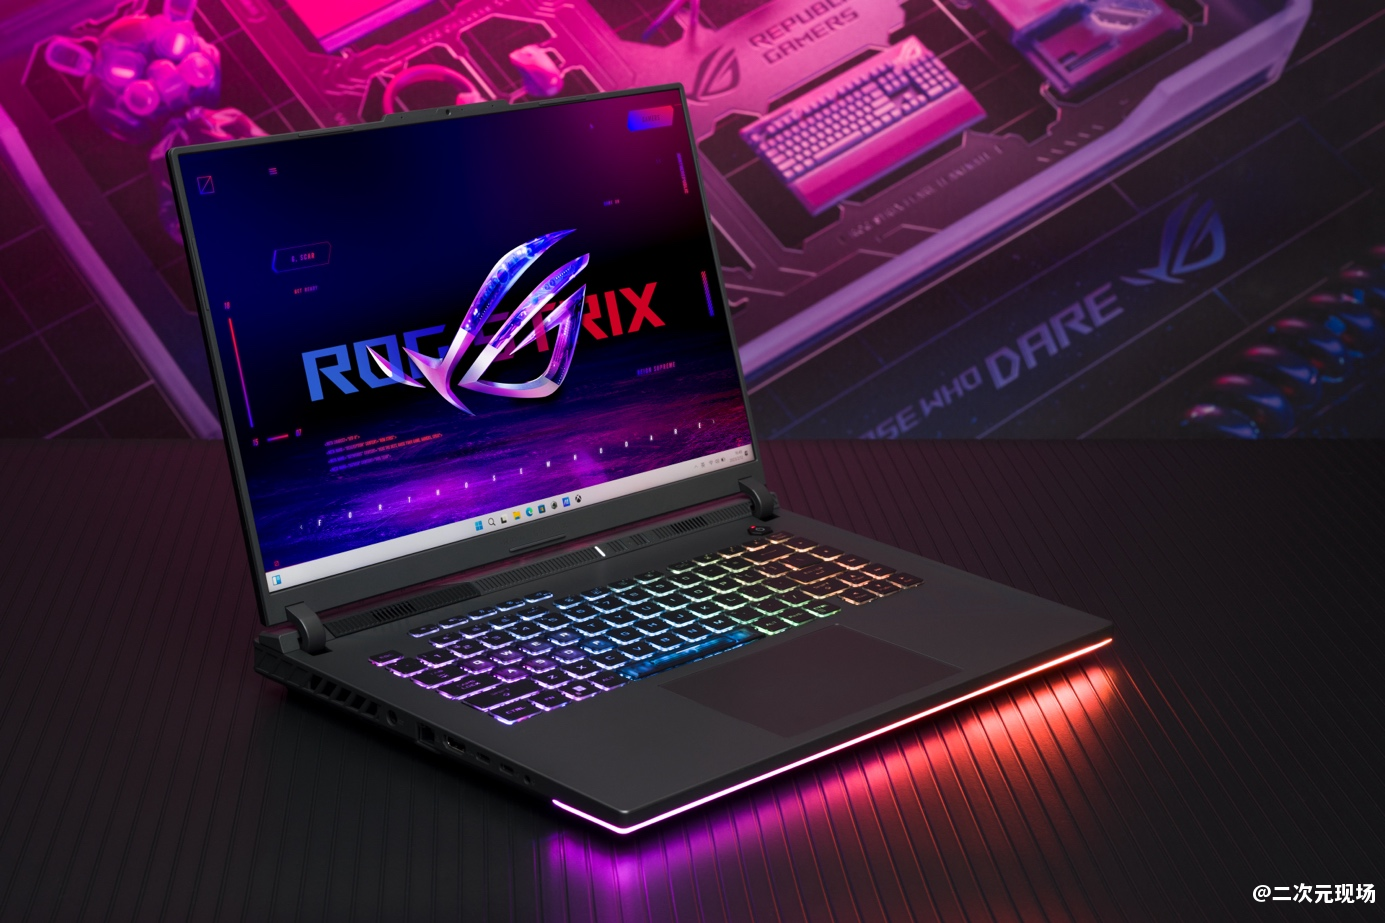 GeForce RTX 4060加持 ROG超人气电竞本魔霸新锐入手9999元